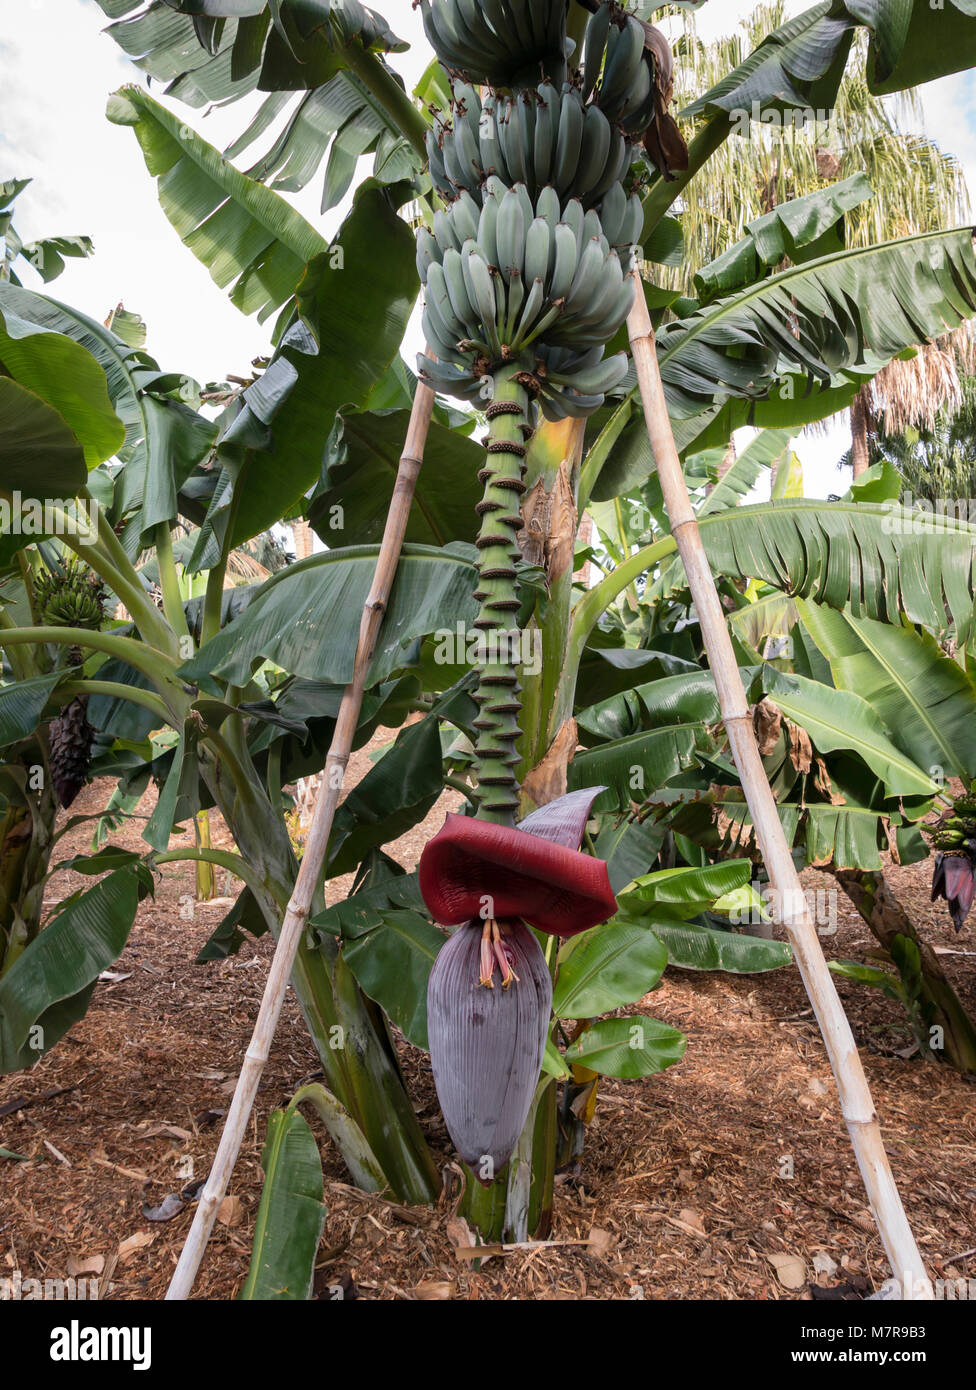 Plante de banane rouge à fleurs, montrant la fleur de banane. Palmetum, jardin botanique, Santa Cruz de Tenerife, Tenerife, Espagne. Banque D'Images